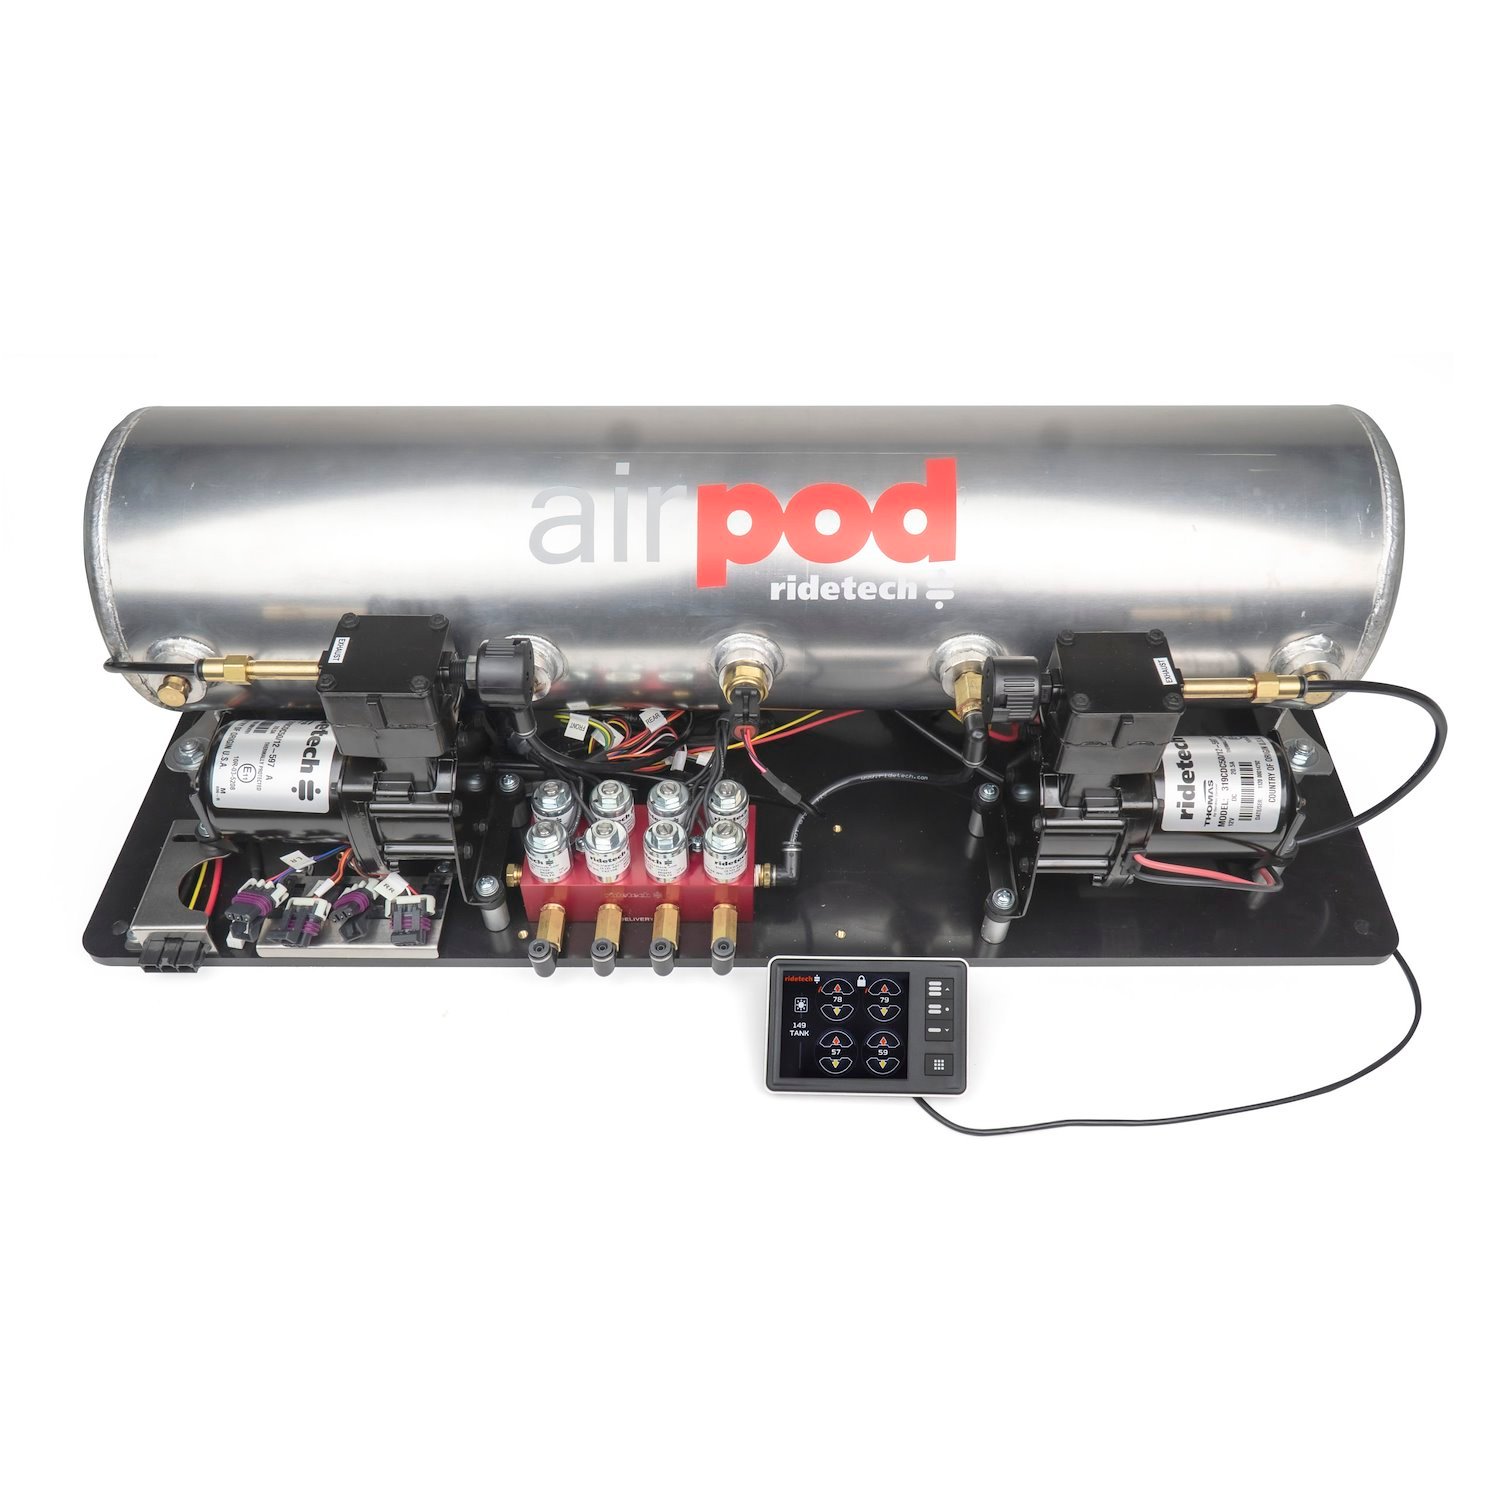 30514100 RidePro E5 Air Ride Suspension Control System [5-Gallon AirPod | Dual Compressor]